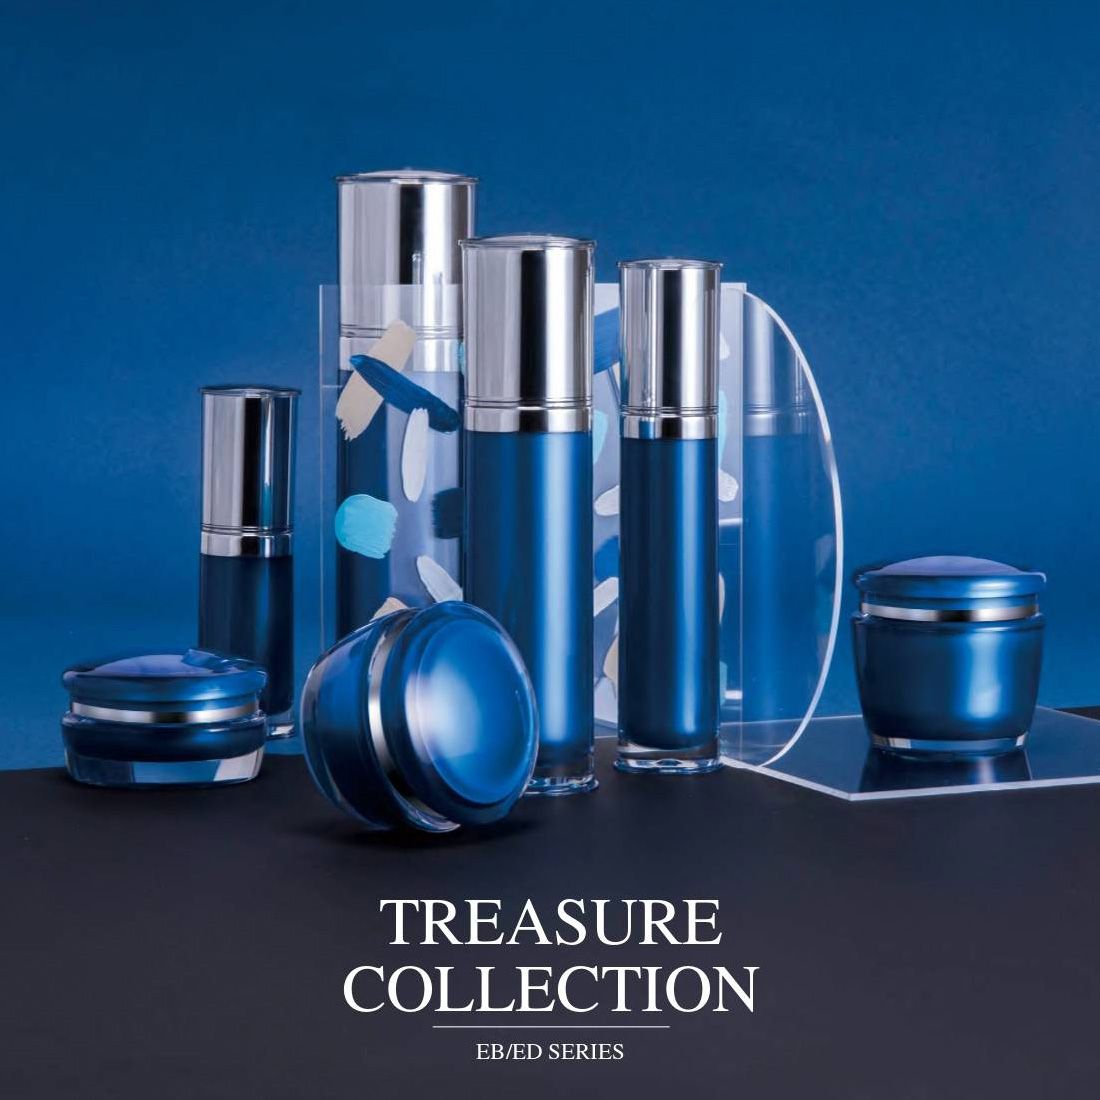 Treasure Collection (บรรจุภัณฑ์เครื่องสำอางและผลิตภัณฑ์บำรุงผิวอะคริลิกหรูหรา) ซีรี่ส์ EB / ED